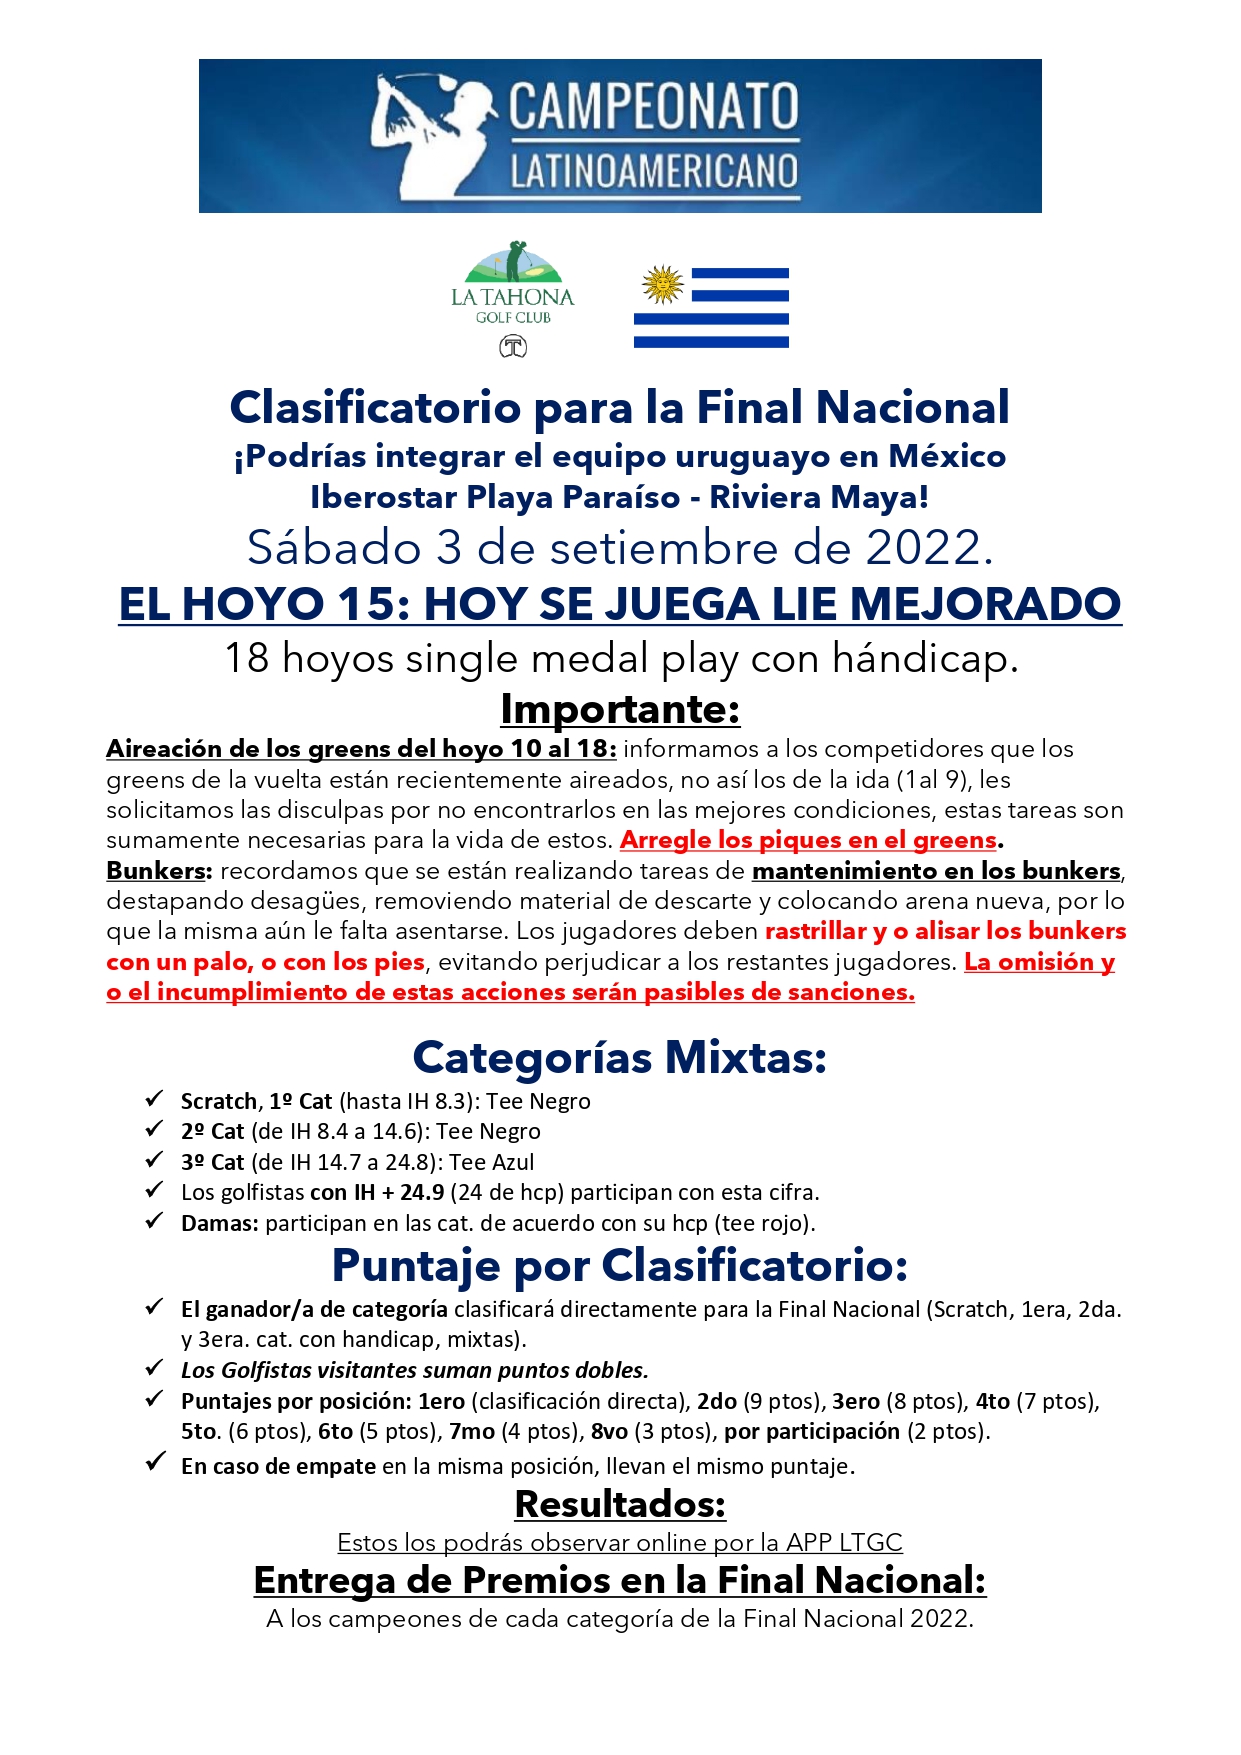 Clasificatorio para el Latinoamericano _ Condiciones de Juego (ver aireacin de greens y mantenimien